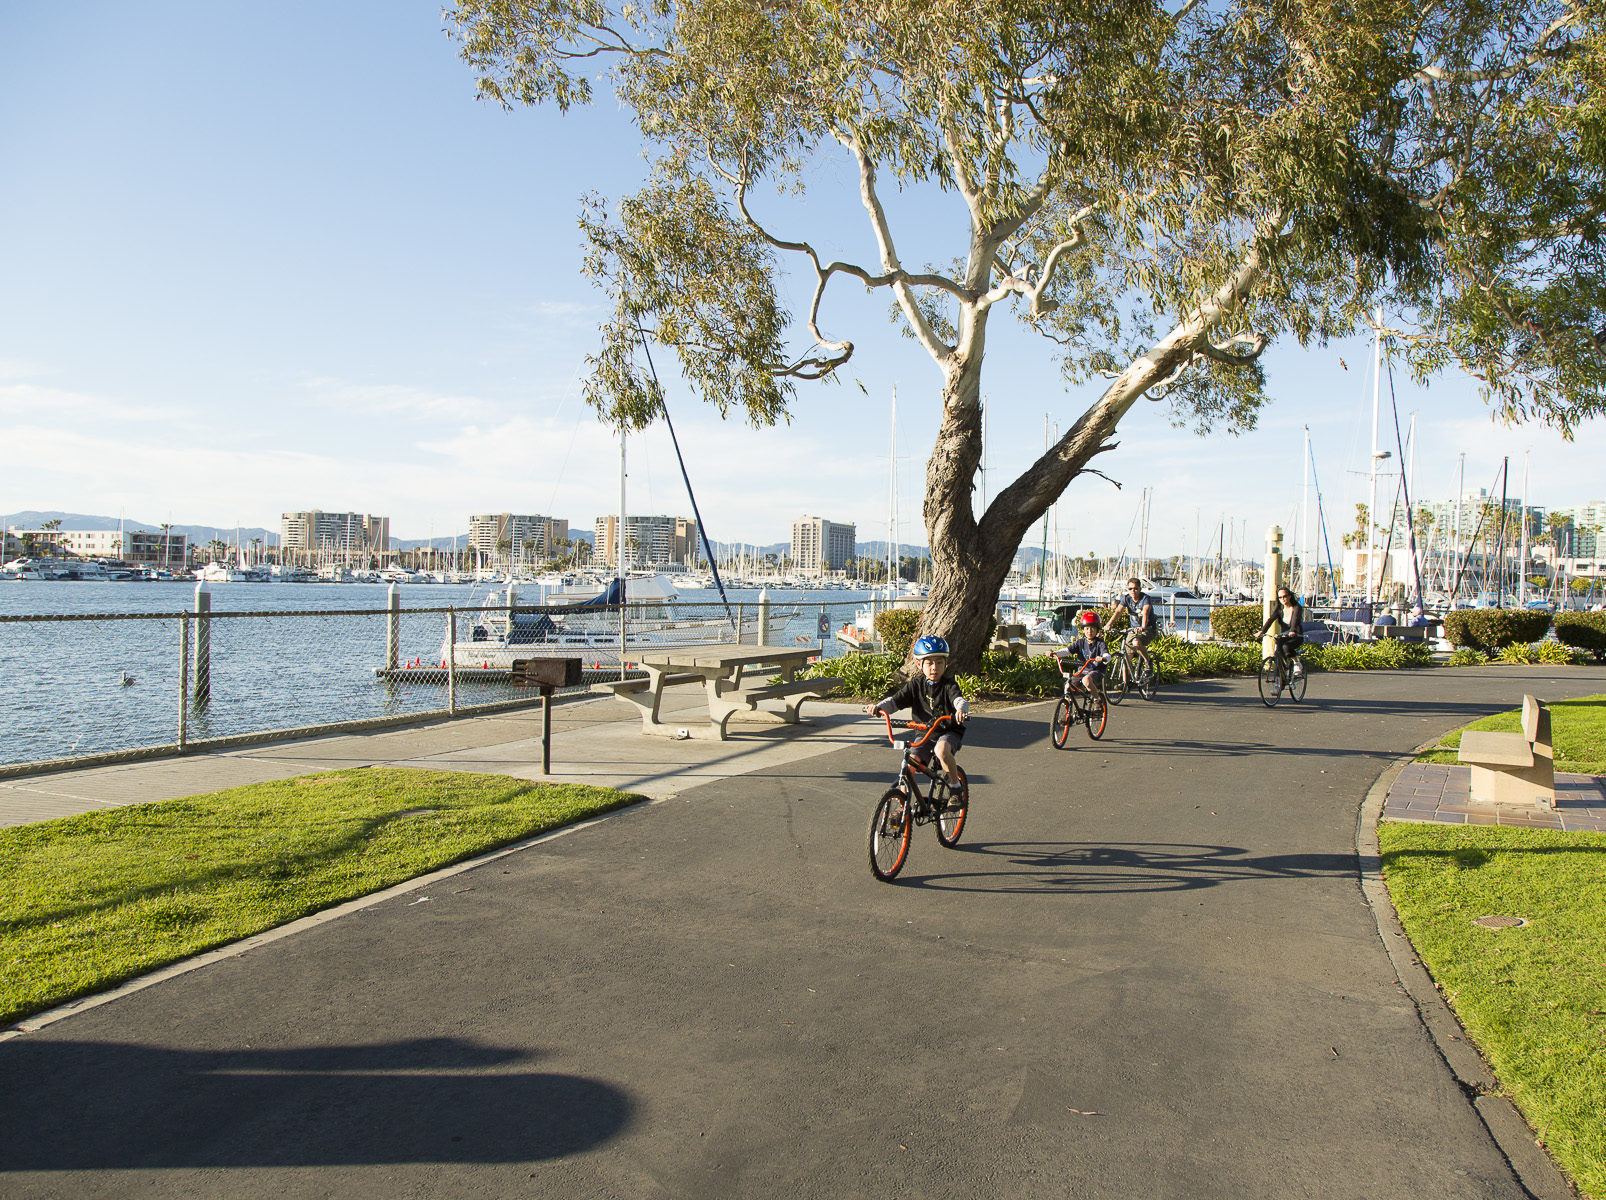 family riding bikes at park near marina